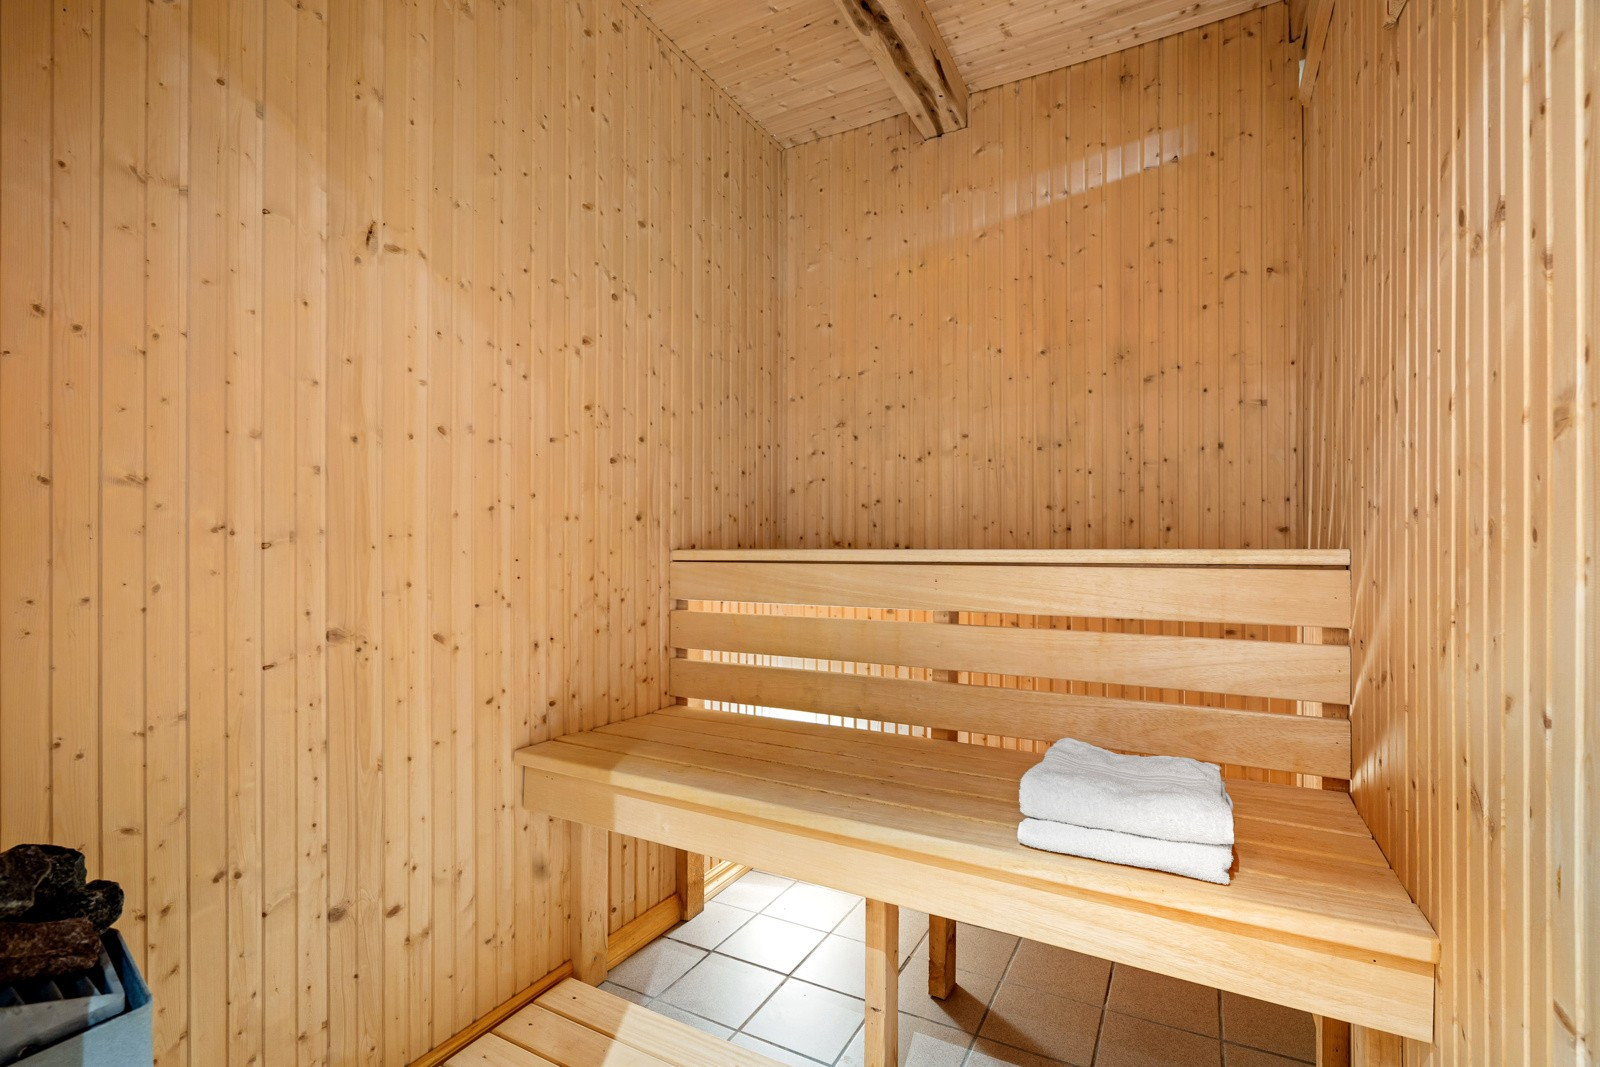 Badstuen er bygget som rom-i-rom med luftespalte mellom vegger og tak jf. eier.